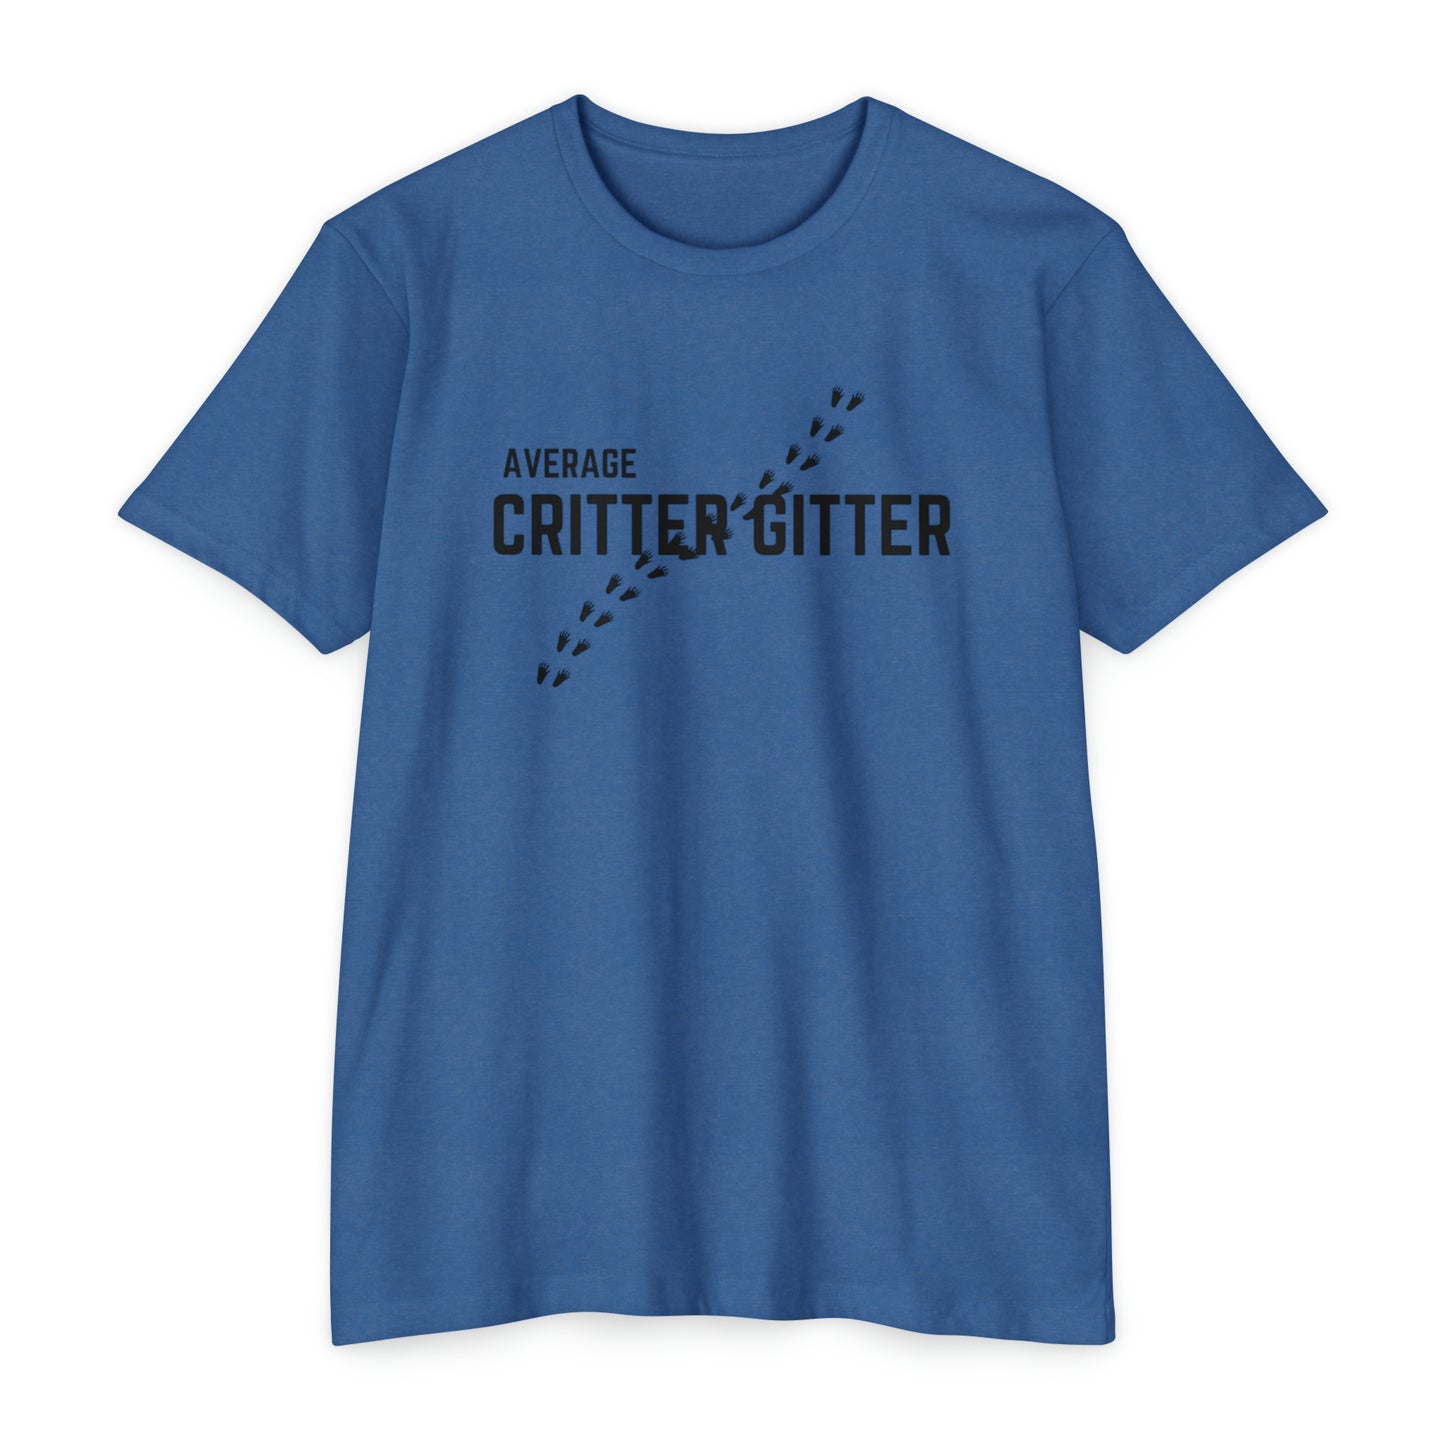 Critter Gitter